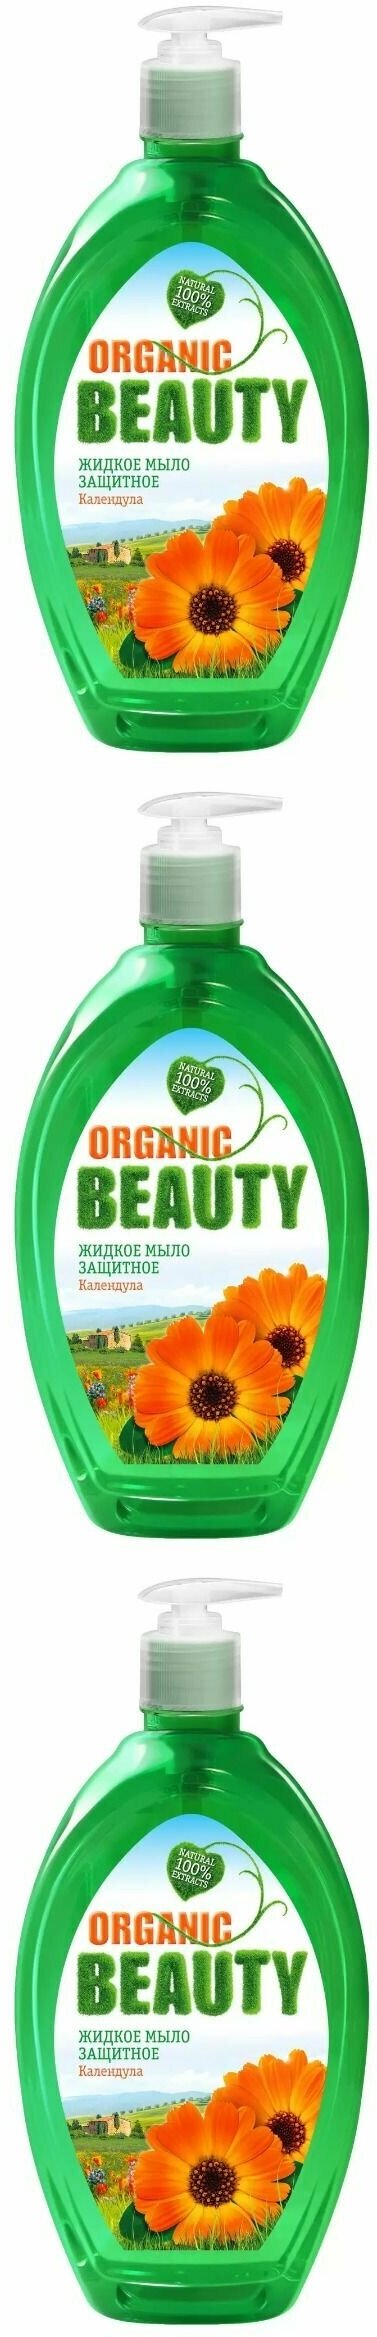 Organic Beauty Мыло для рук Жидкое Защитное 500мл 3шт